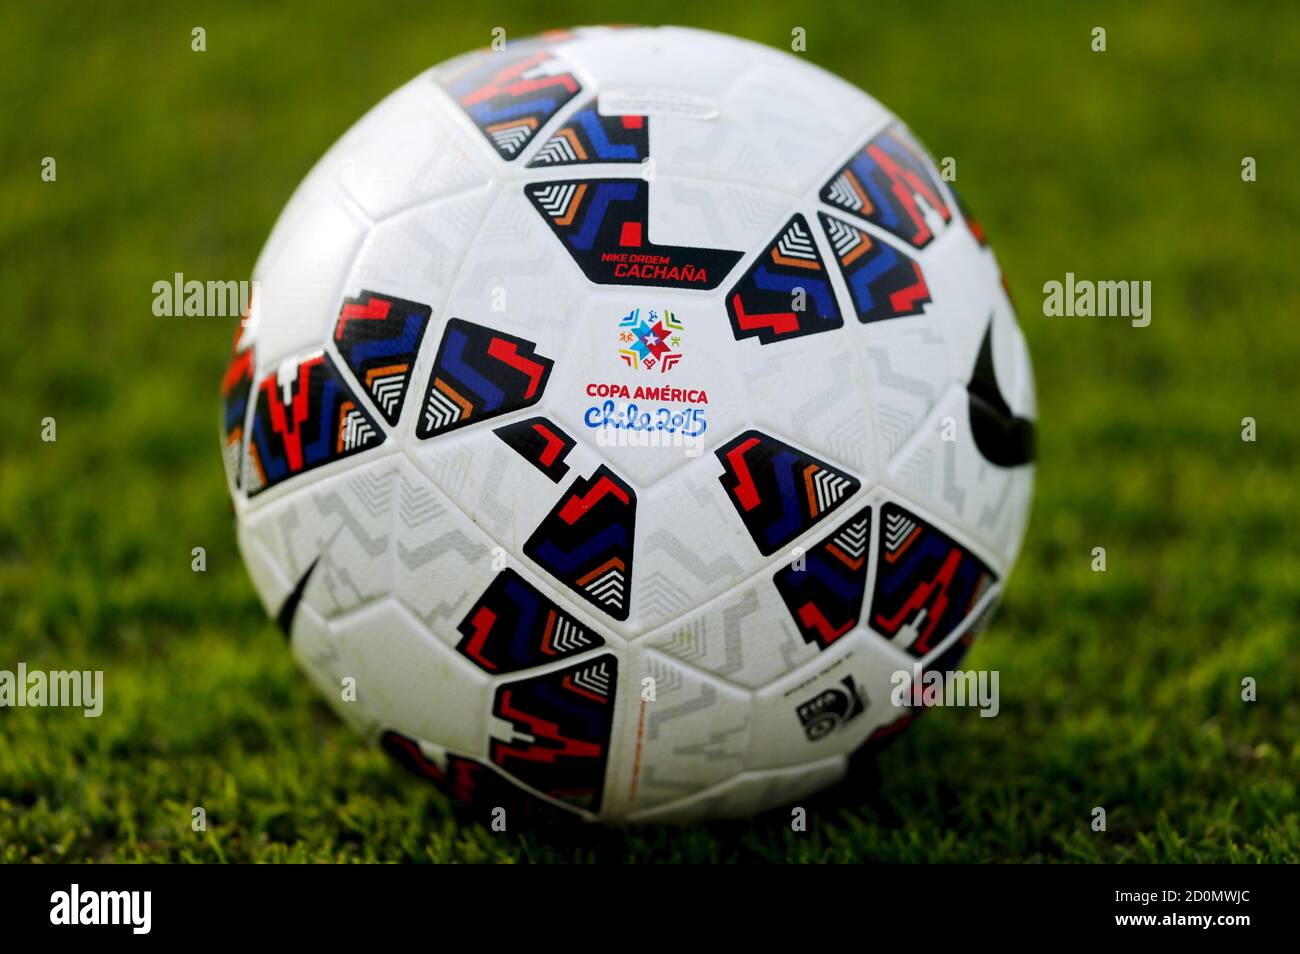 La Cachaana, el balón oficial de fútbol de la Copa América de 2015, se ve durante la sesión de entrenamiento de equipos Argentina en Buenos Aires, Argentina, 1